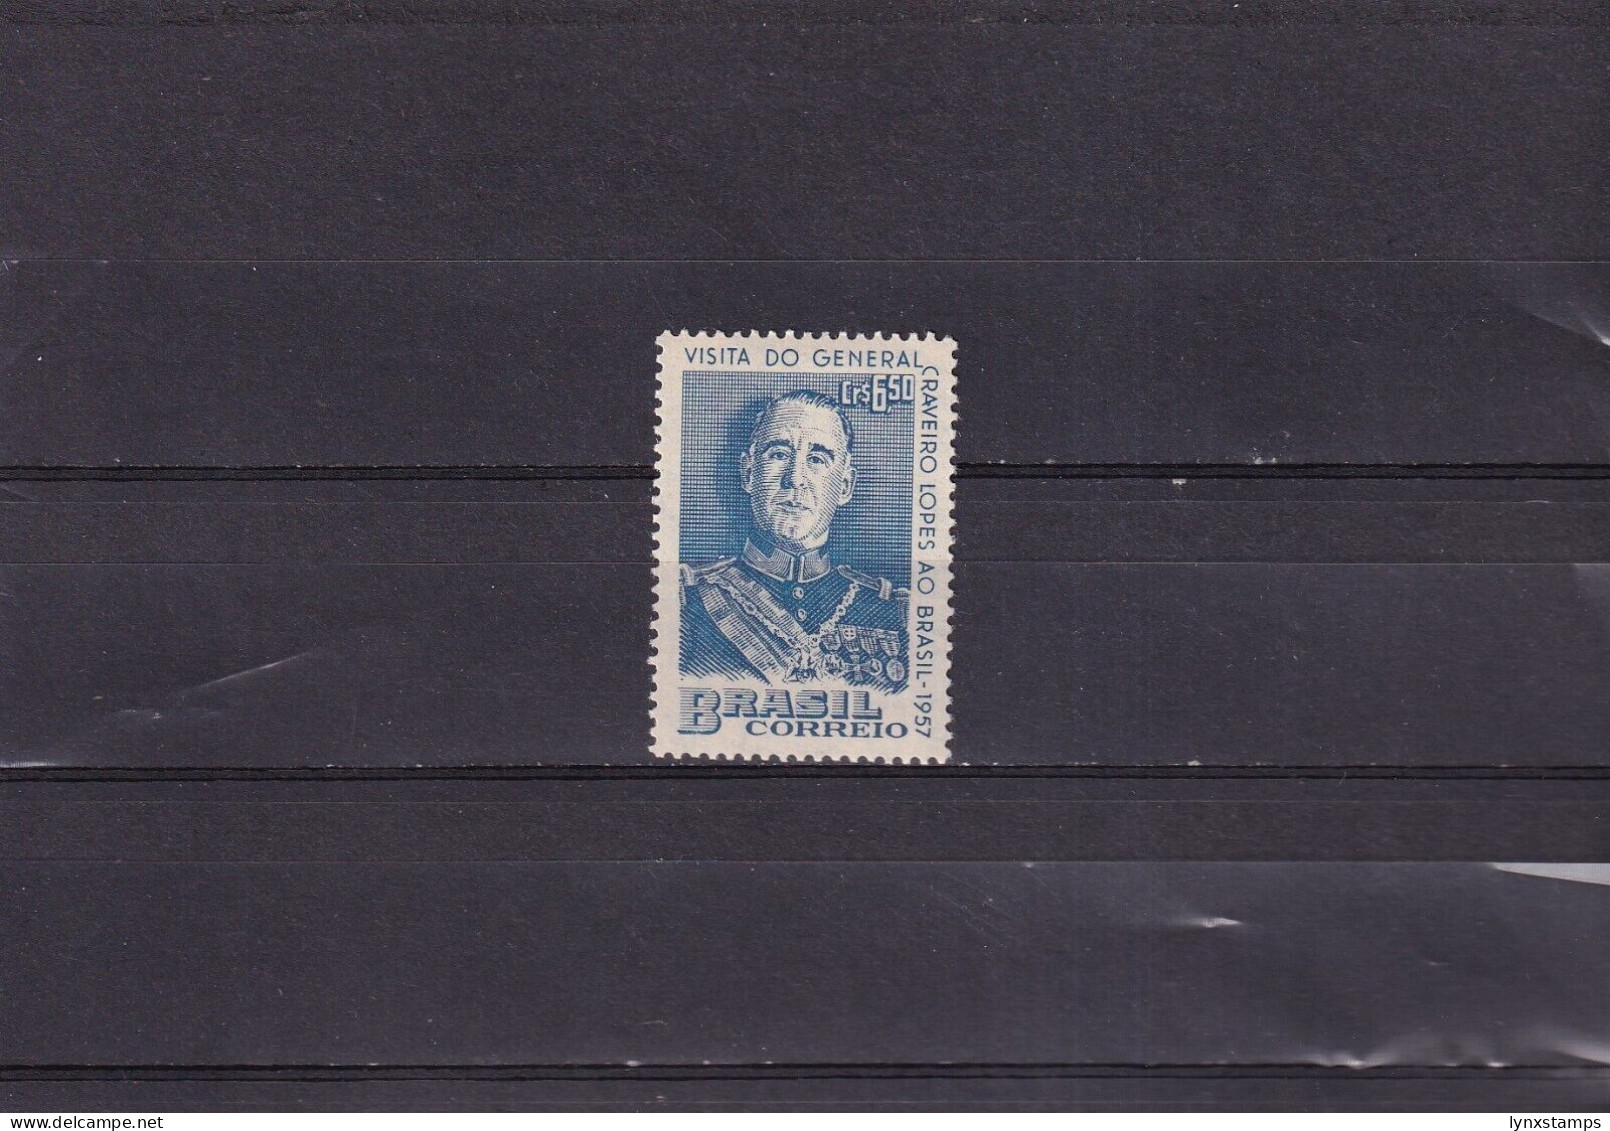 ER03 Brazil 1957 Visit Of Portugal's President - MNH Stamp - Unused Stamps